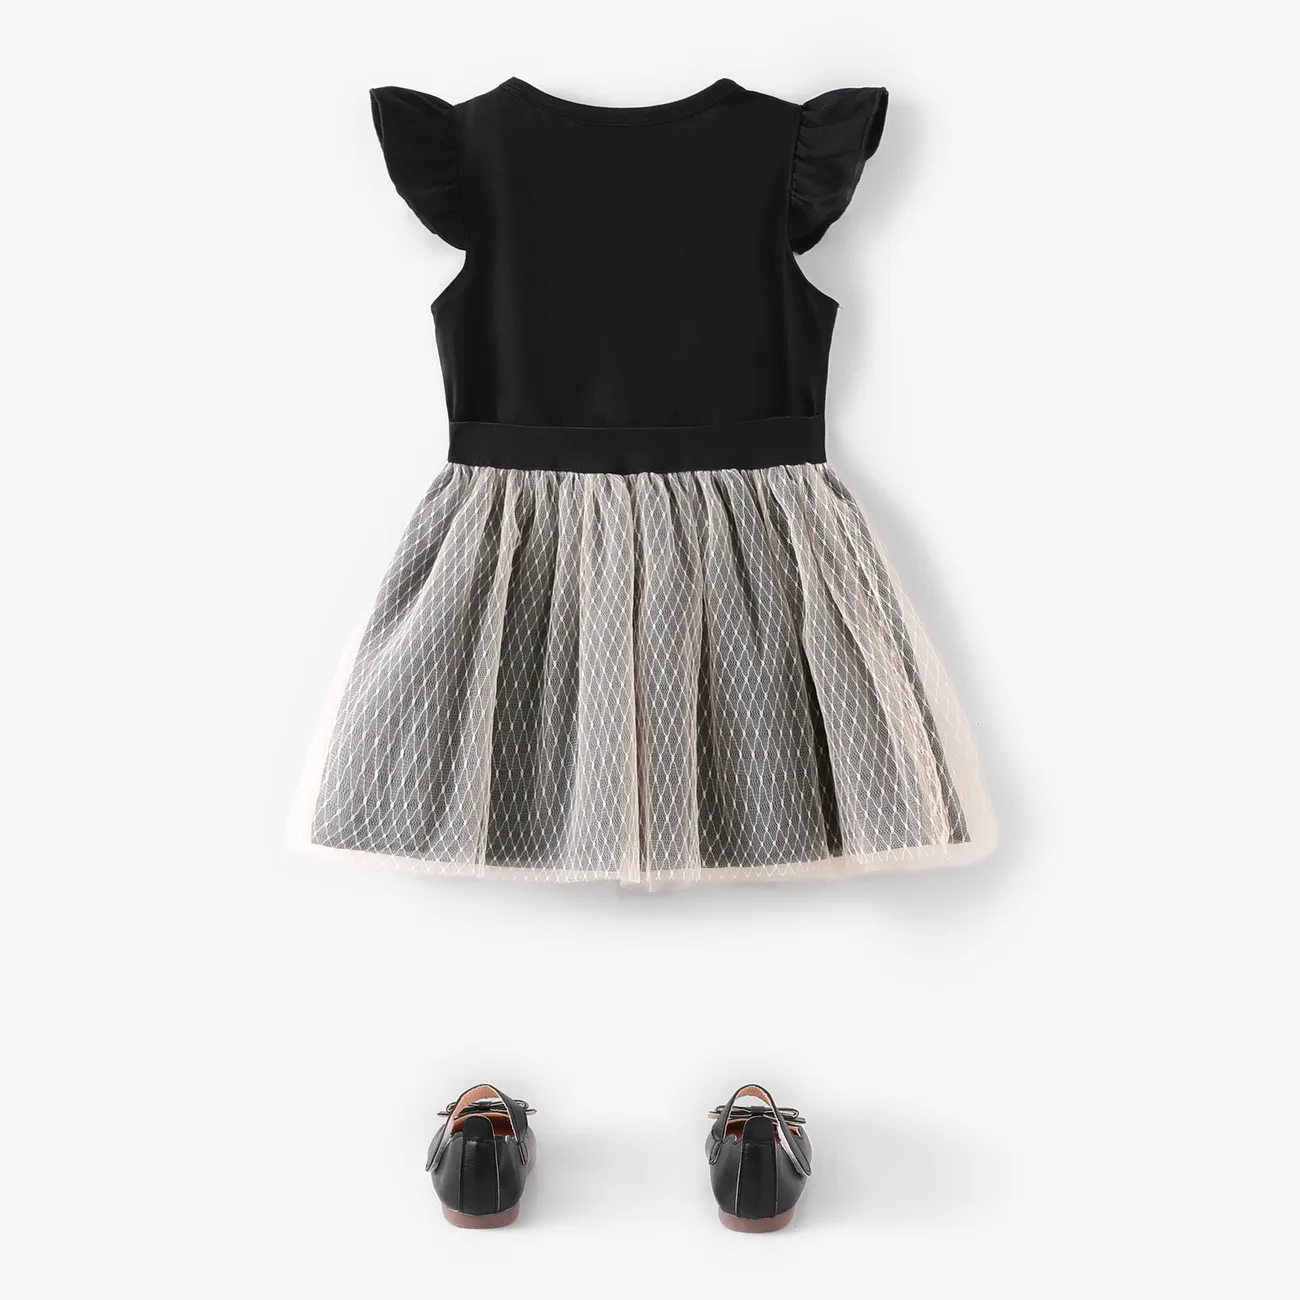 母親節 2件 小童 女 立體造型 甜美 套裝裙 黑色 big image 1